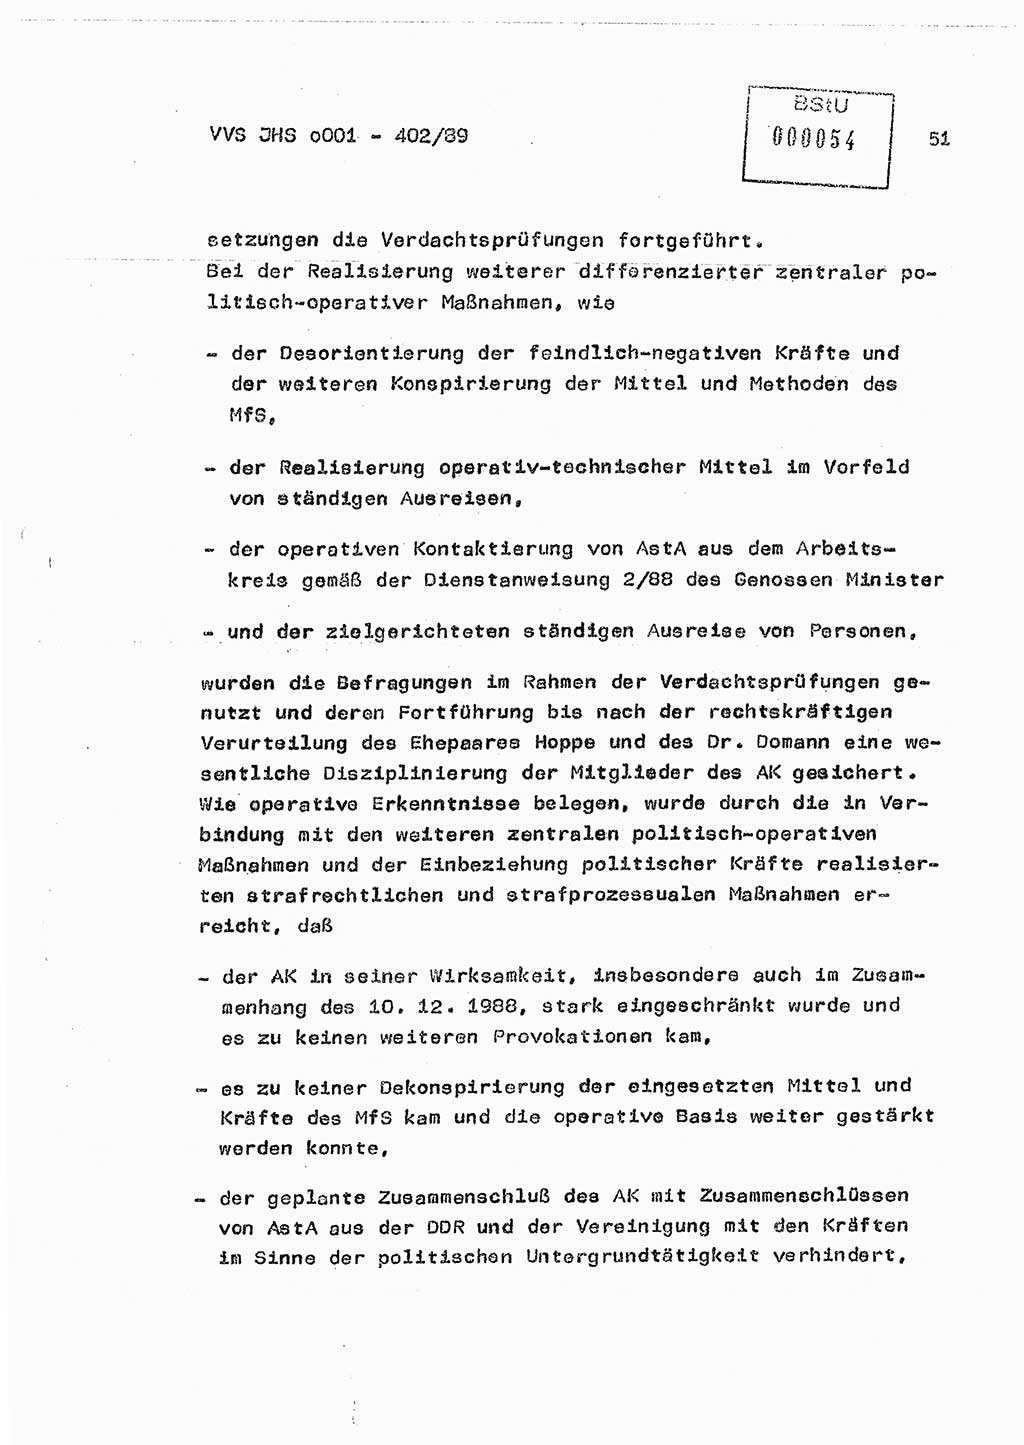 Diplomarbeit Major Günter Müller (HA Ⅸ/9), Ministerium für Staatssicherheit (MfS) [Deutsche Demokratische Republik (DDR)], Juristische Hochschule (JHS), Vertrauliche Verschlußsache (VVS) o001-402/89, Potsdam 1989, Seite 51 (Dipl.-Arb. MfS DDR JHS VVS o001-402/89 1989, S. 51)